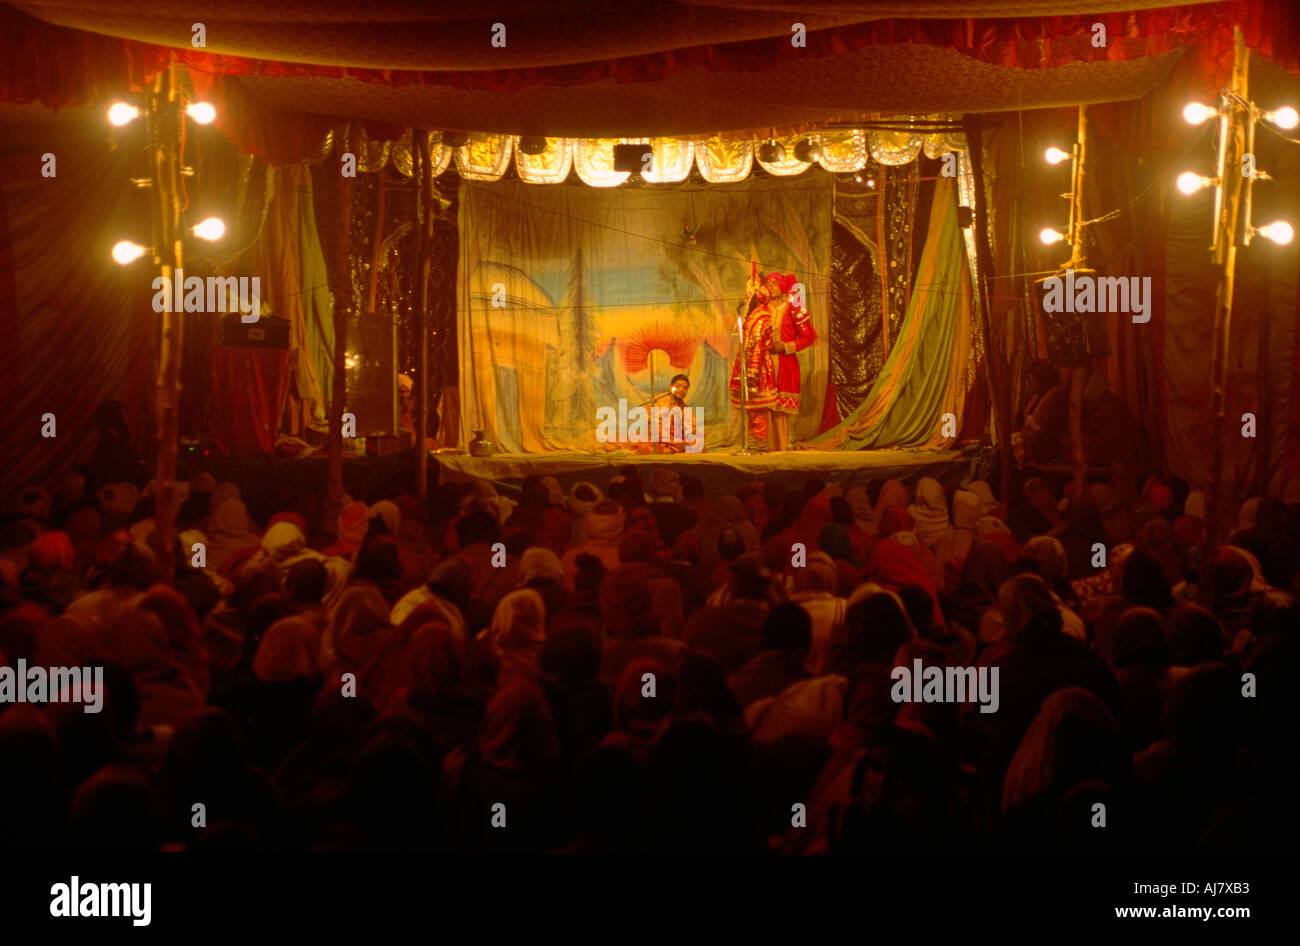 Religiösen spielen, die an durch einen Ashram für die Ausbildung von Pilgern, Maha Kumbh Mela 2001, Allahabad, Uttar Pradesh, Indien Stockfoto